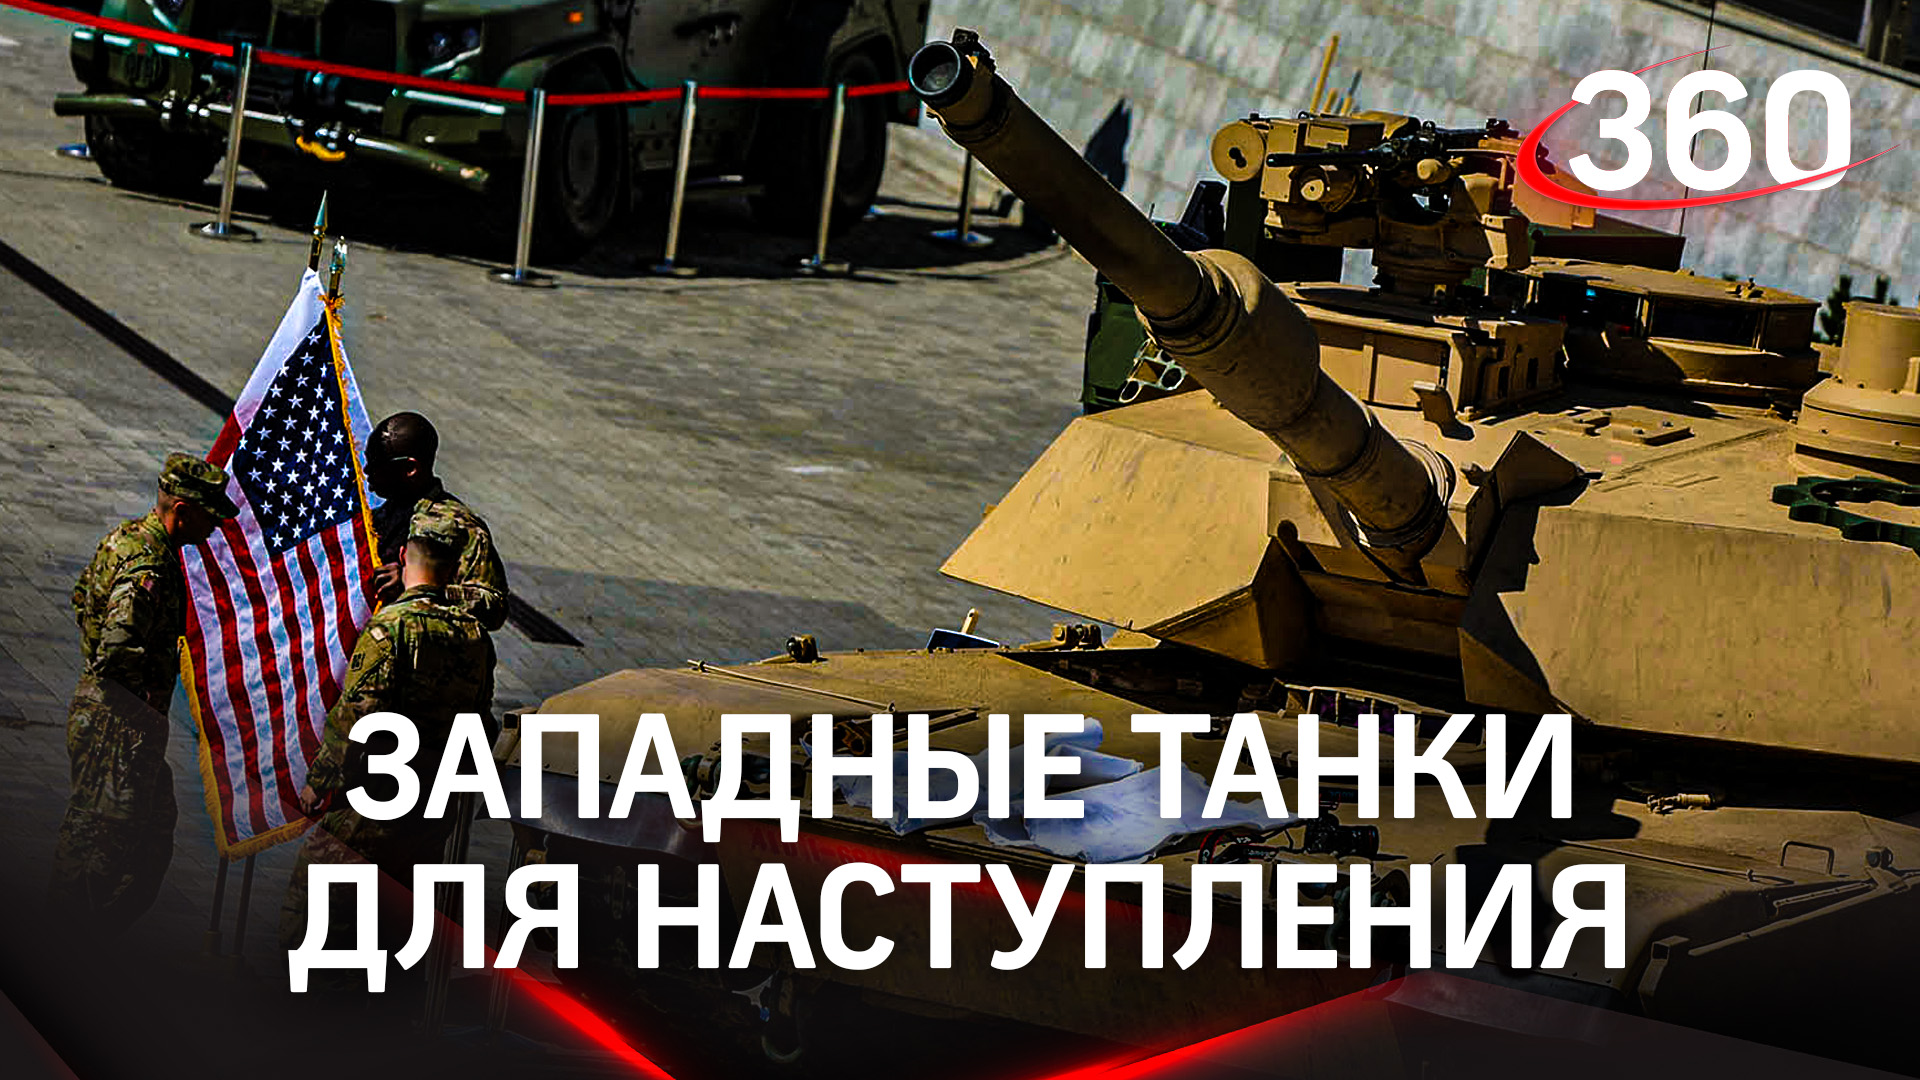 Захватить Крым и пойти в атаку - США объяснили, зачем Киеву западные танки. Поставки уже одобрили